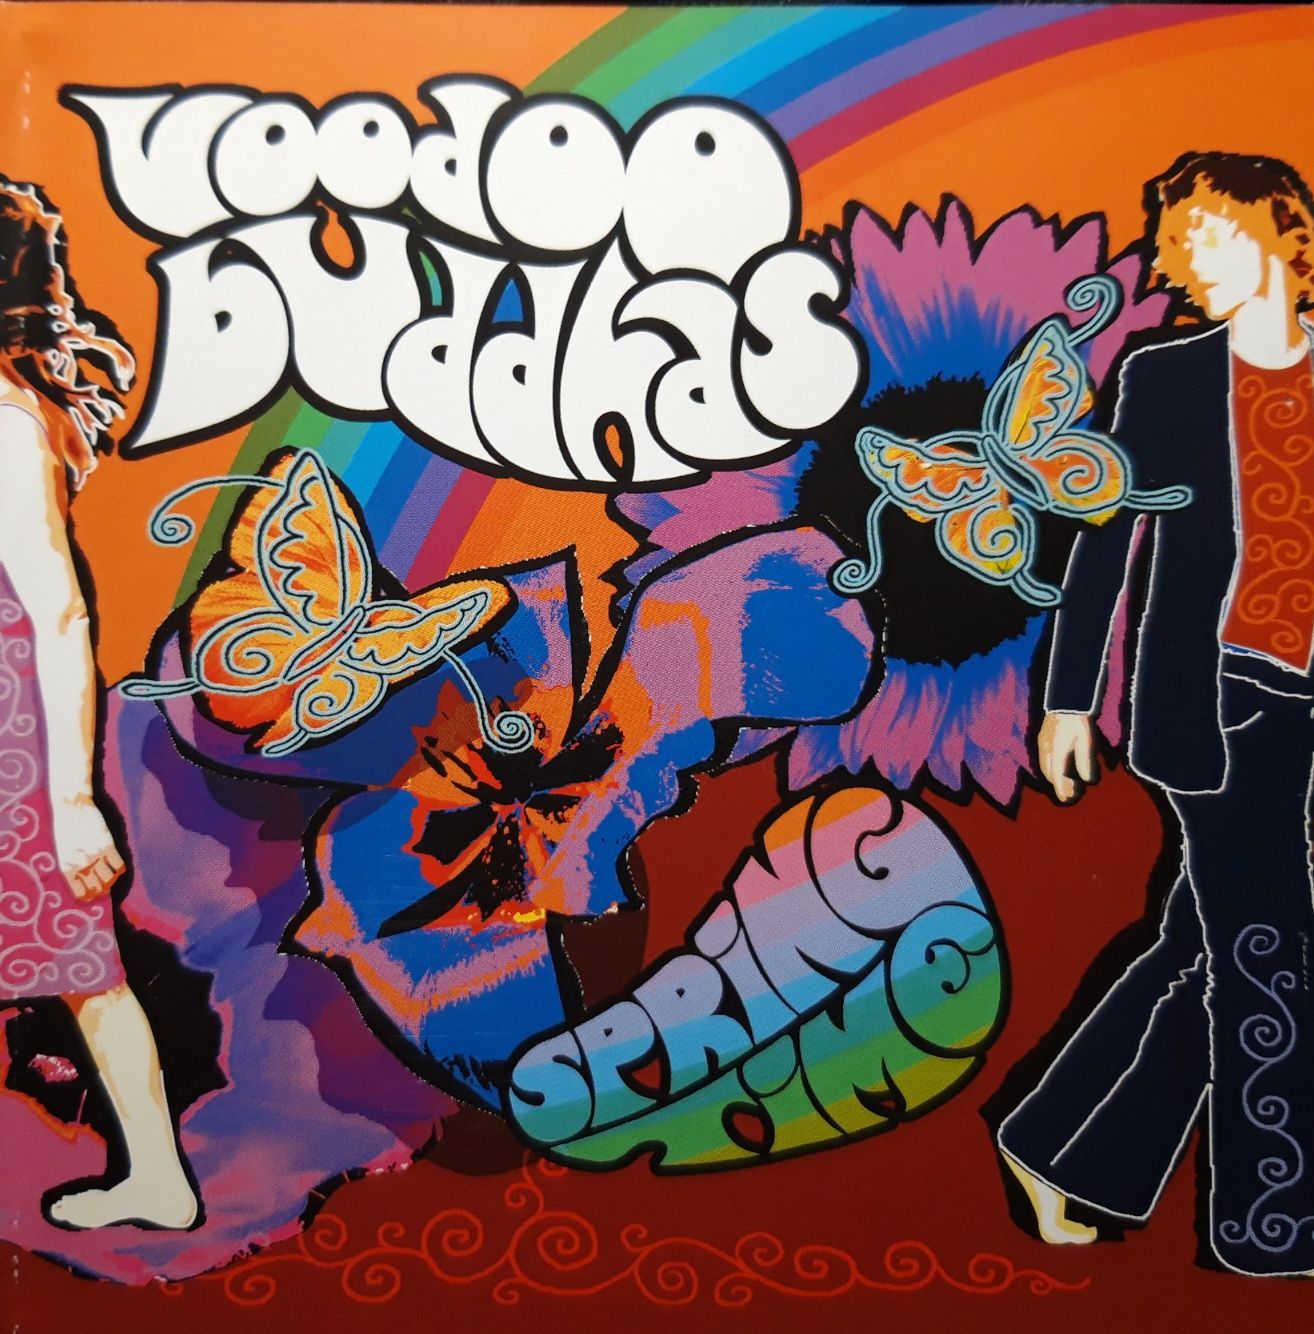 Voodoo Buddhas – Springtime (CD, 2007)